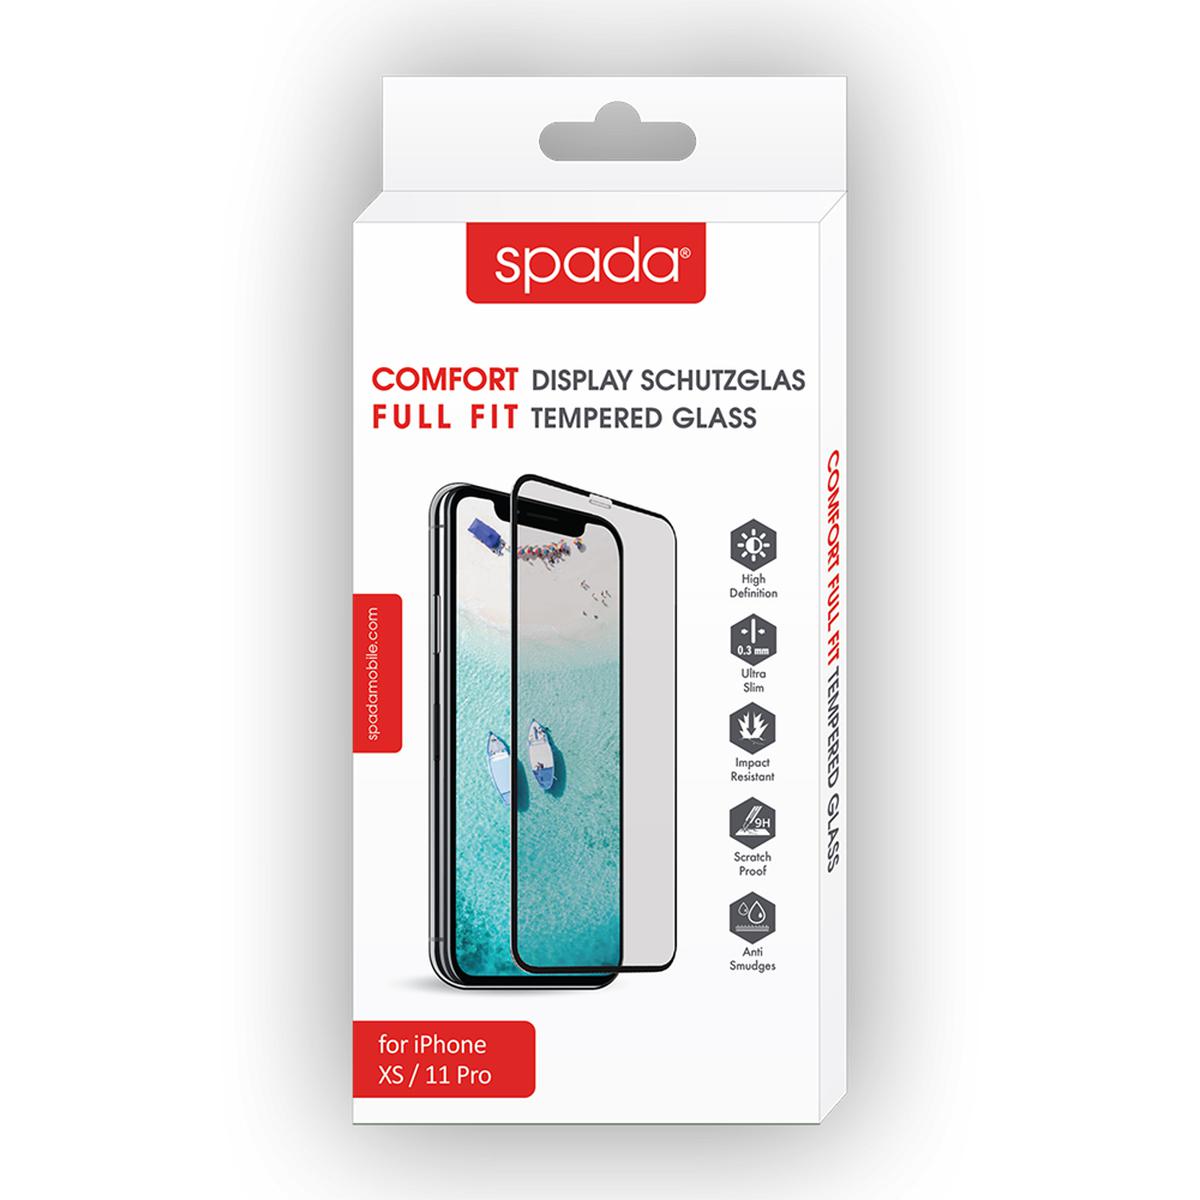 Spada iPhone X/XS/11 Pro Tam Kaplayan Ekran Koruma Camı - Siyah resmi